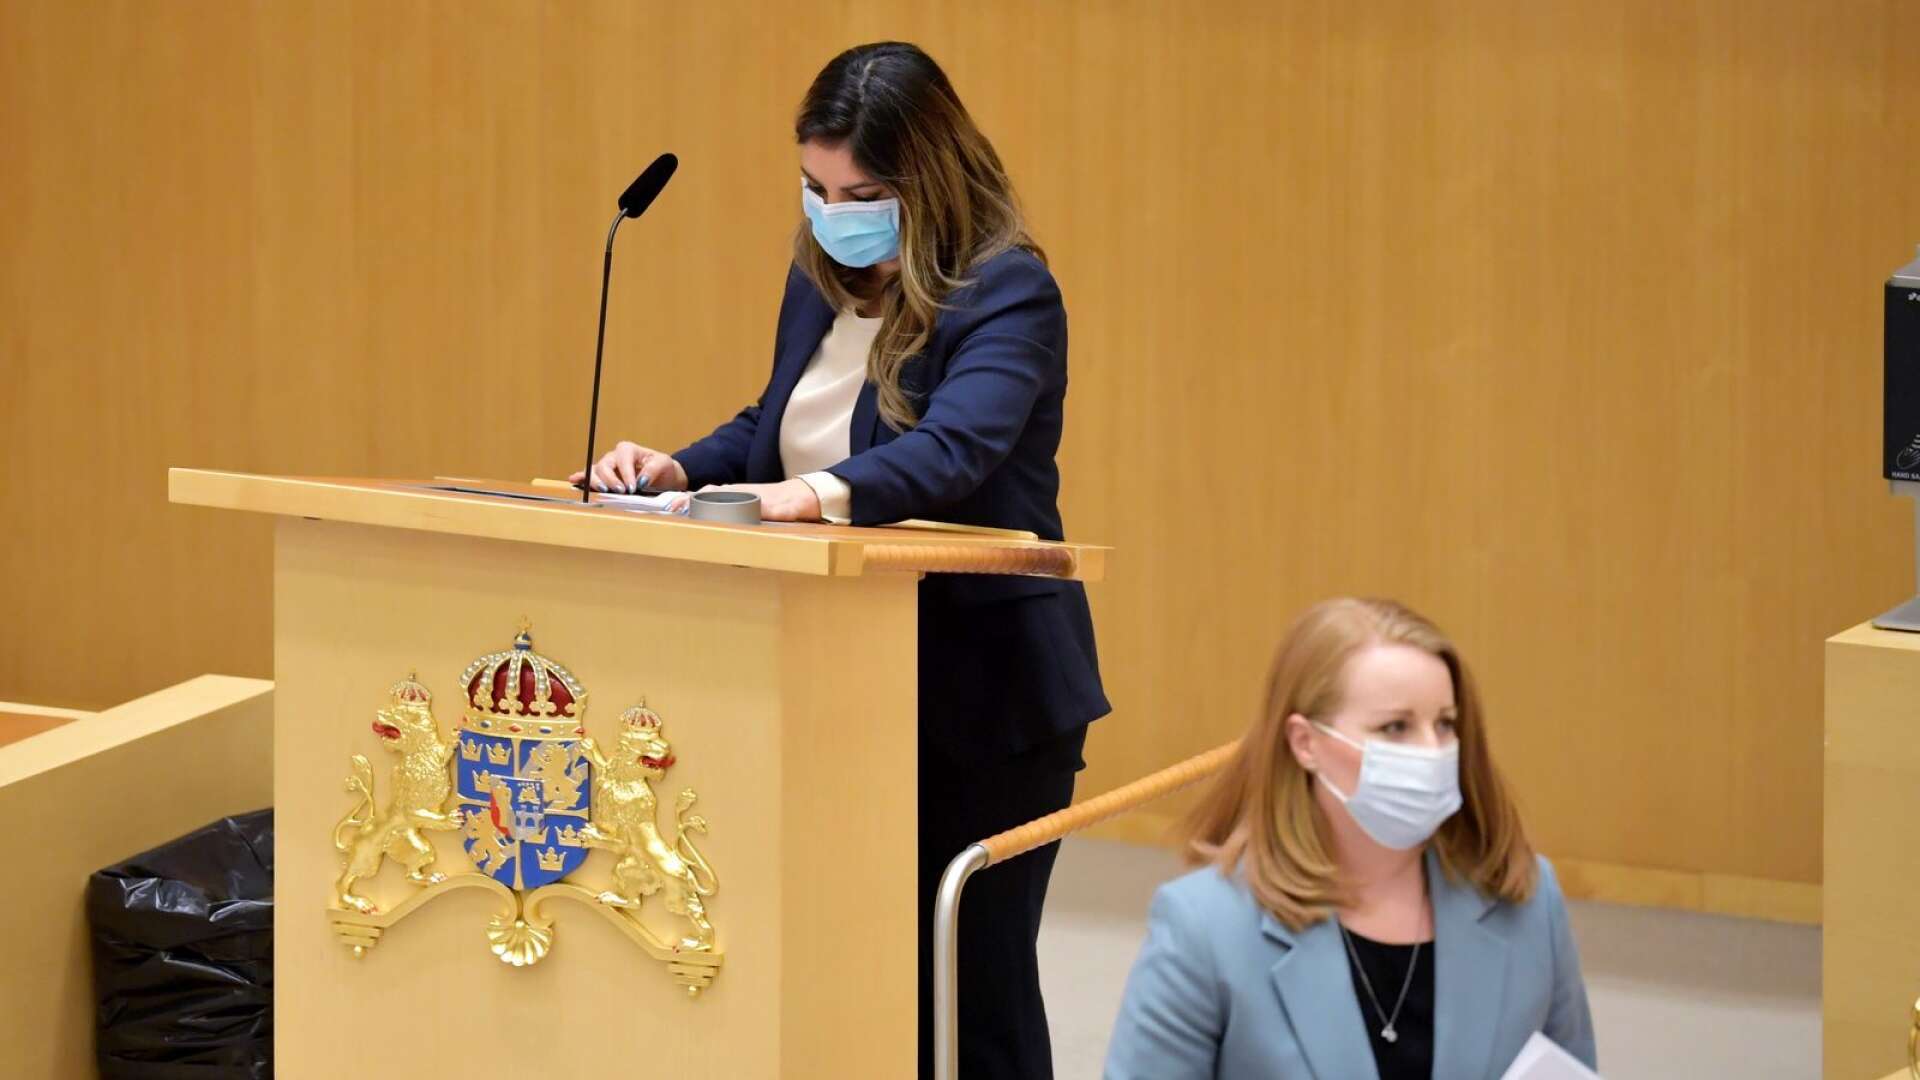 Men det forskarna är upprörda över i Sverige är tvärtom att man använder munskydd utan att kräva det av allmänheten, skriver Byrån.